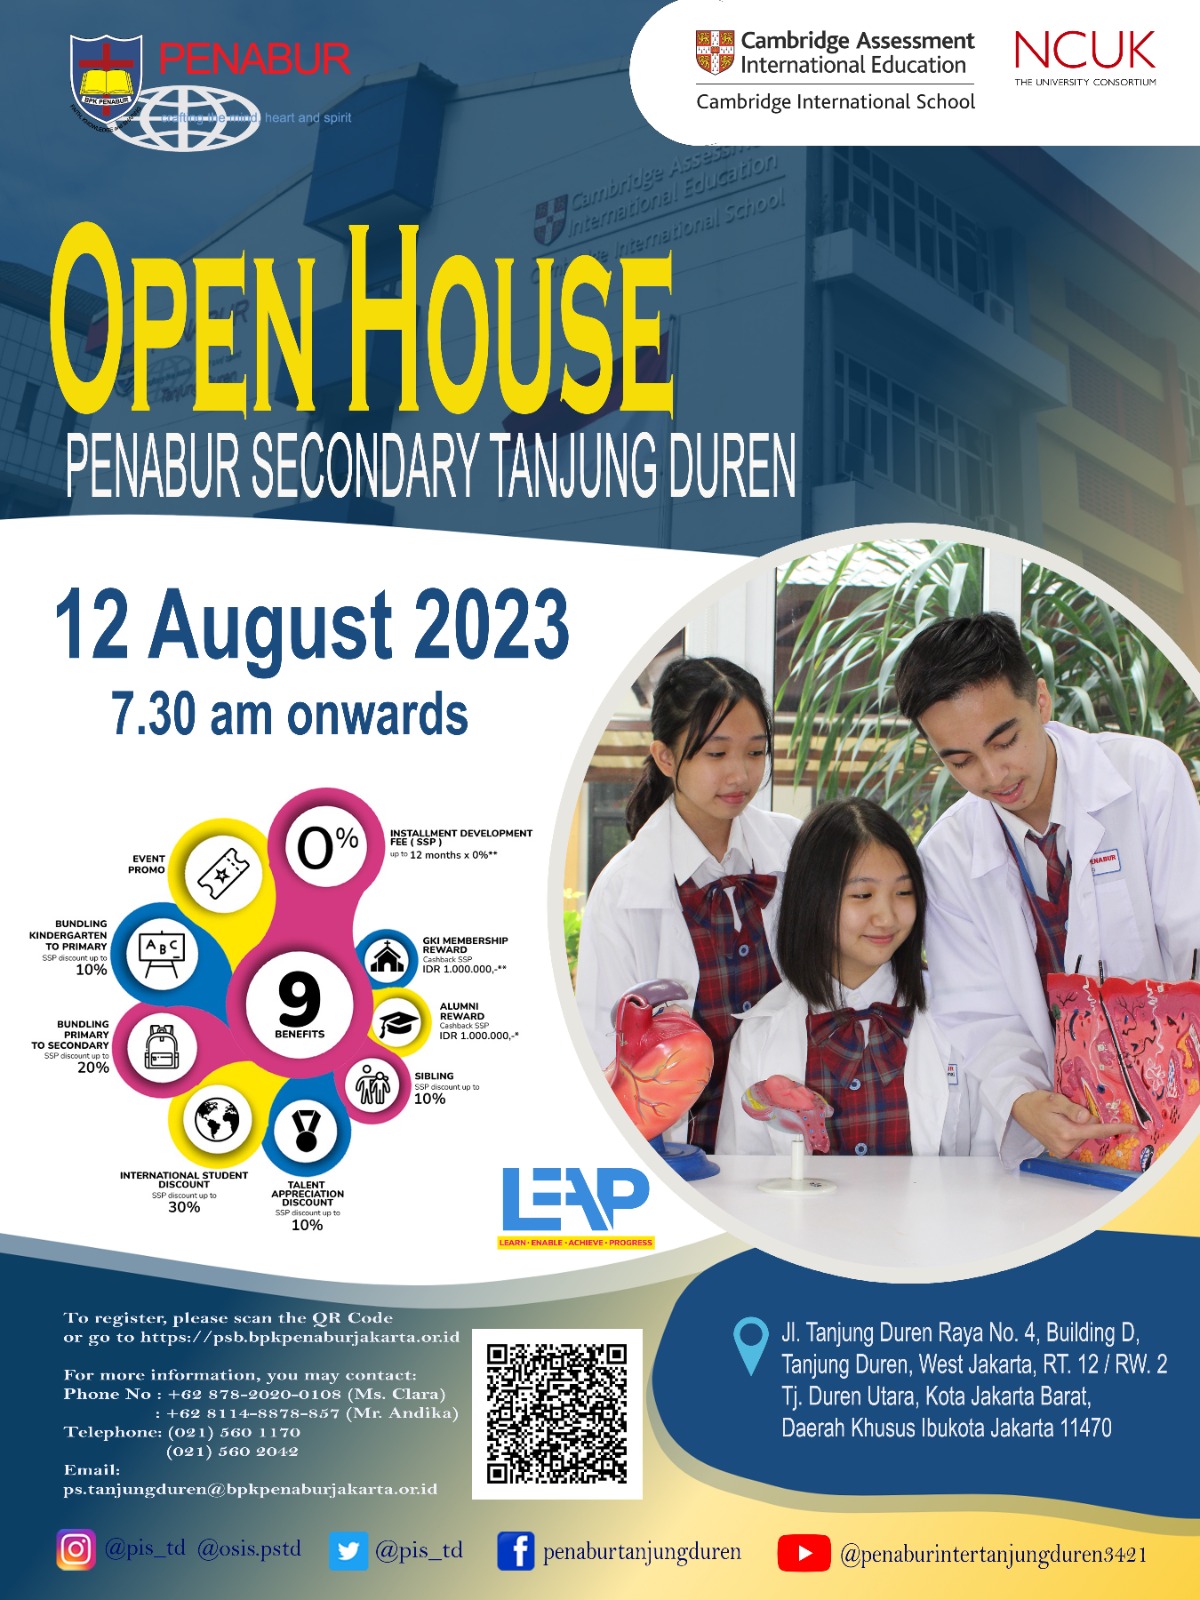 Penabur International Tanjung Duren Open House 12 August 2023